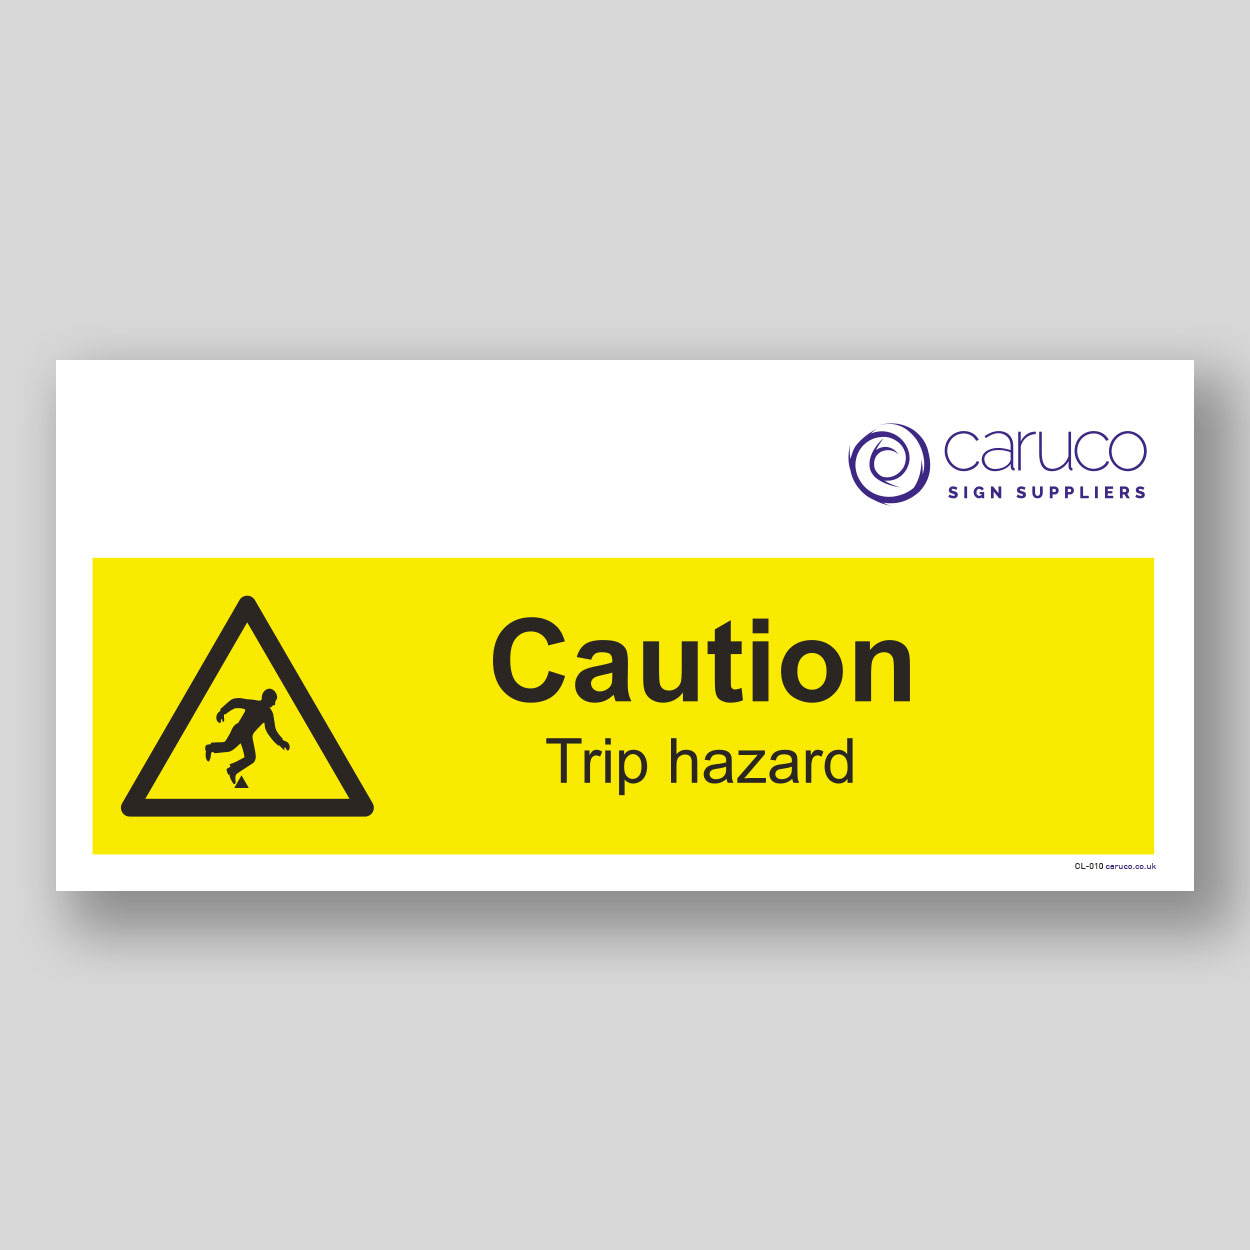 CL-010 Caution - trip hazard